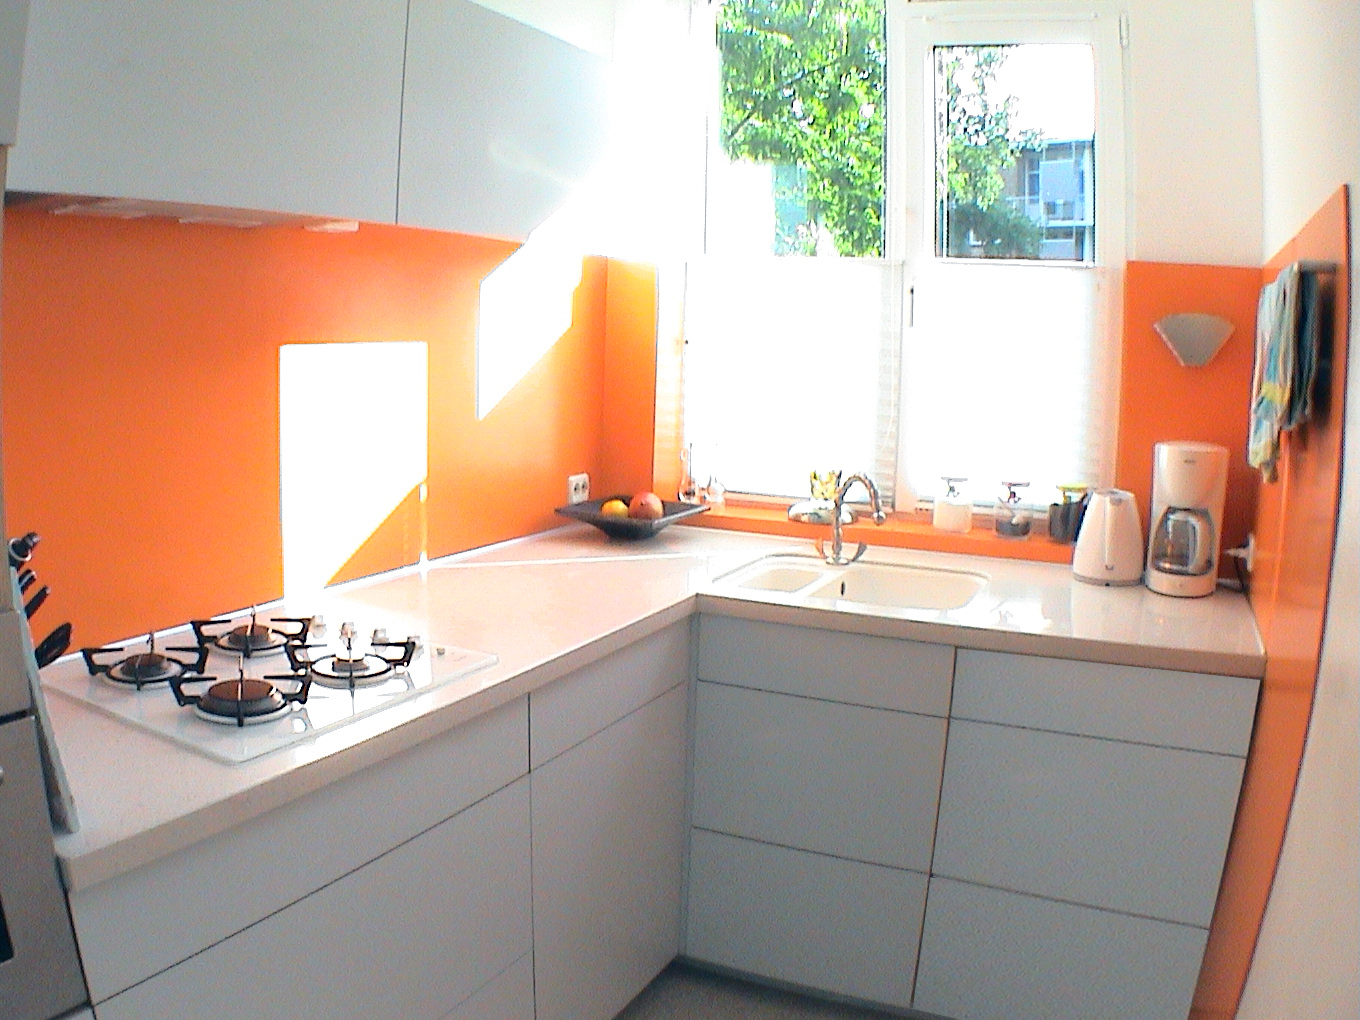 Kitchen with orange background